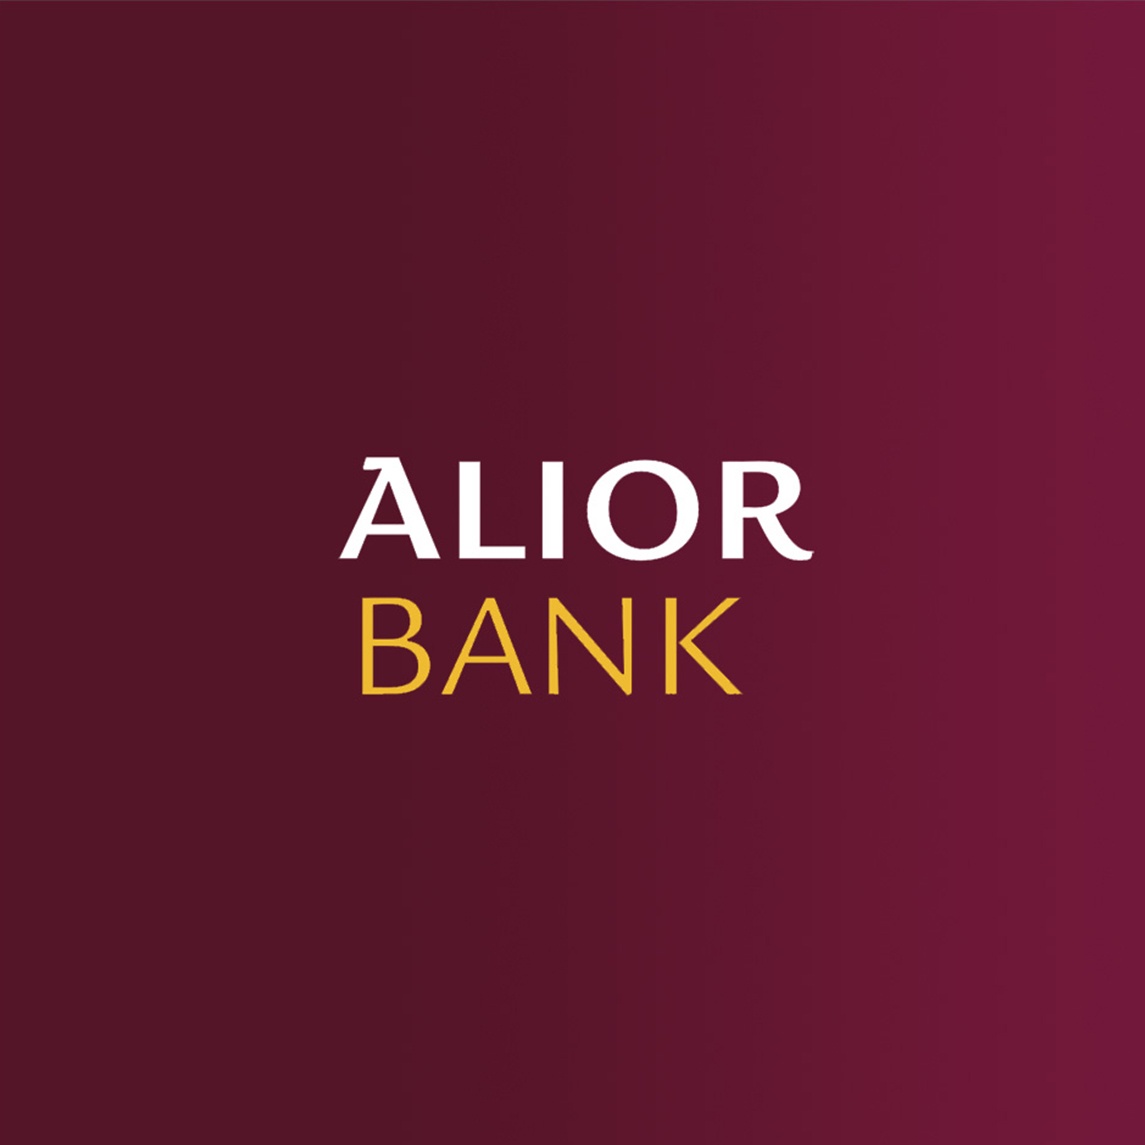 Wacom for Business Financial Service esignature Alior Bank